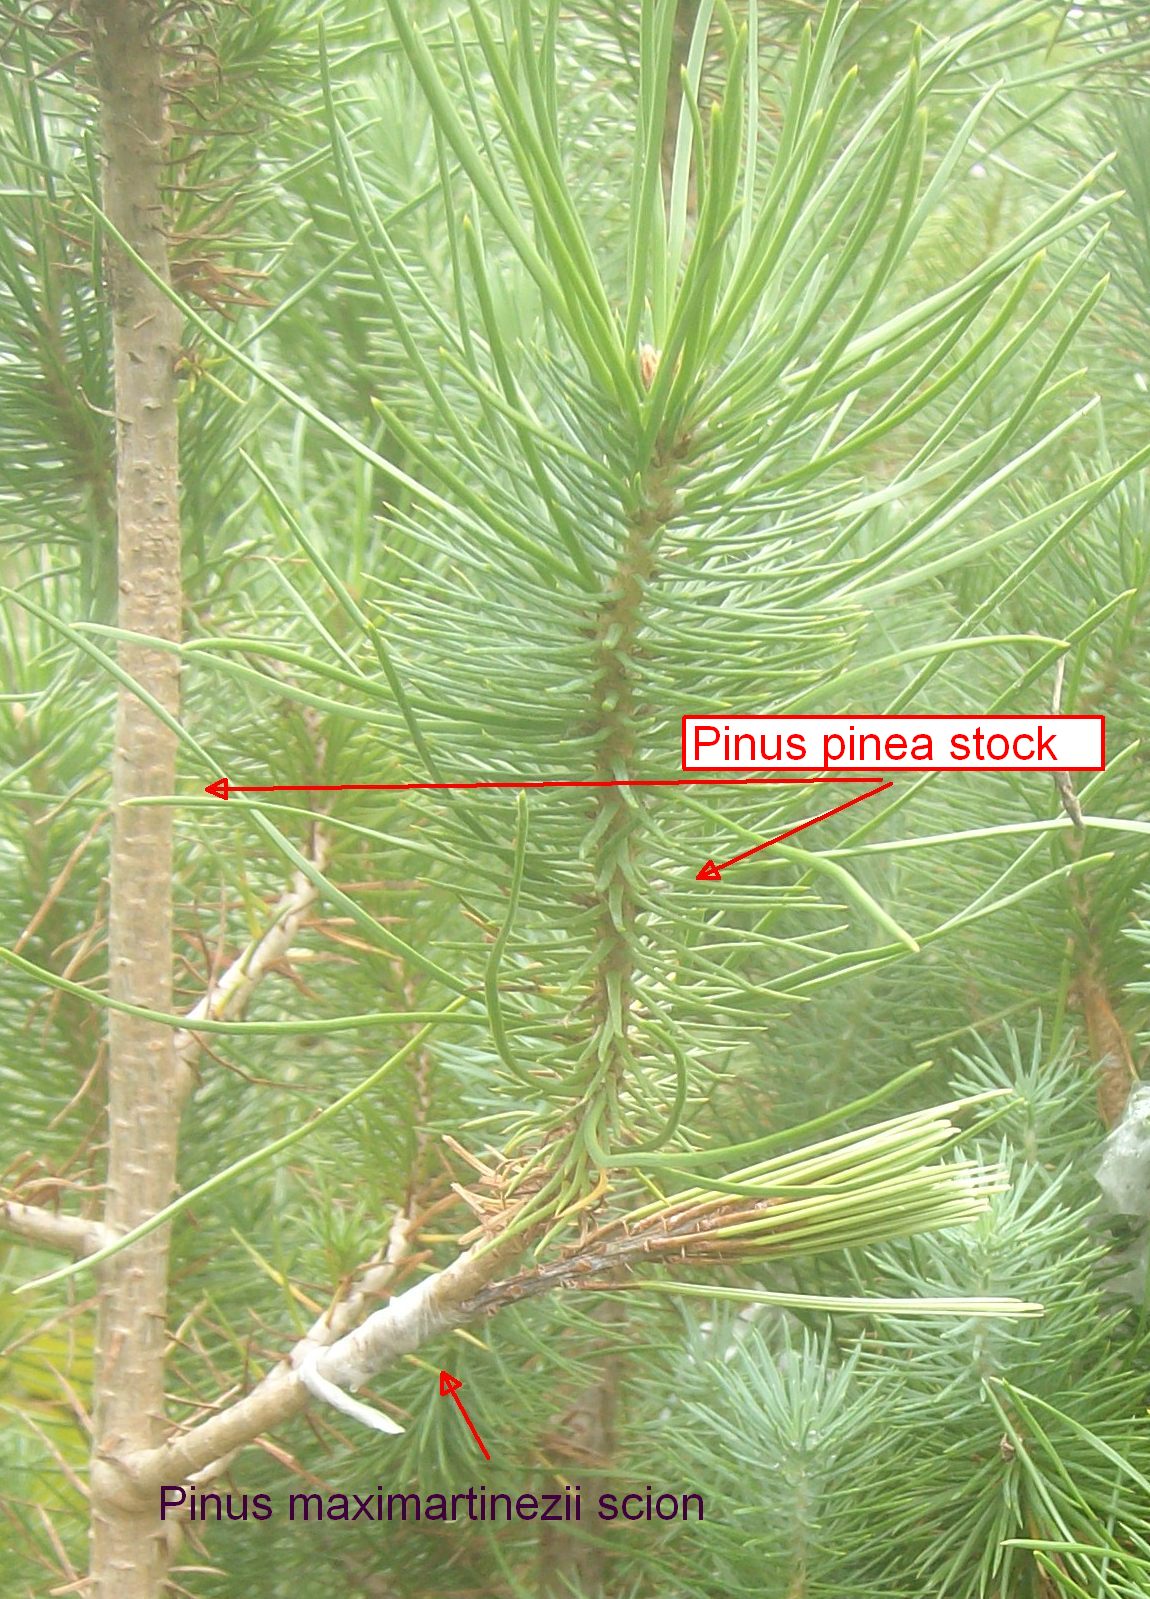 Pinus maximartinezii veneer graft